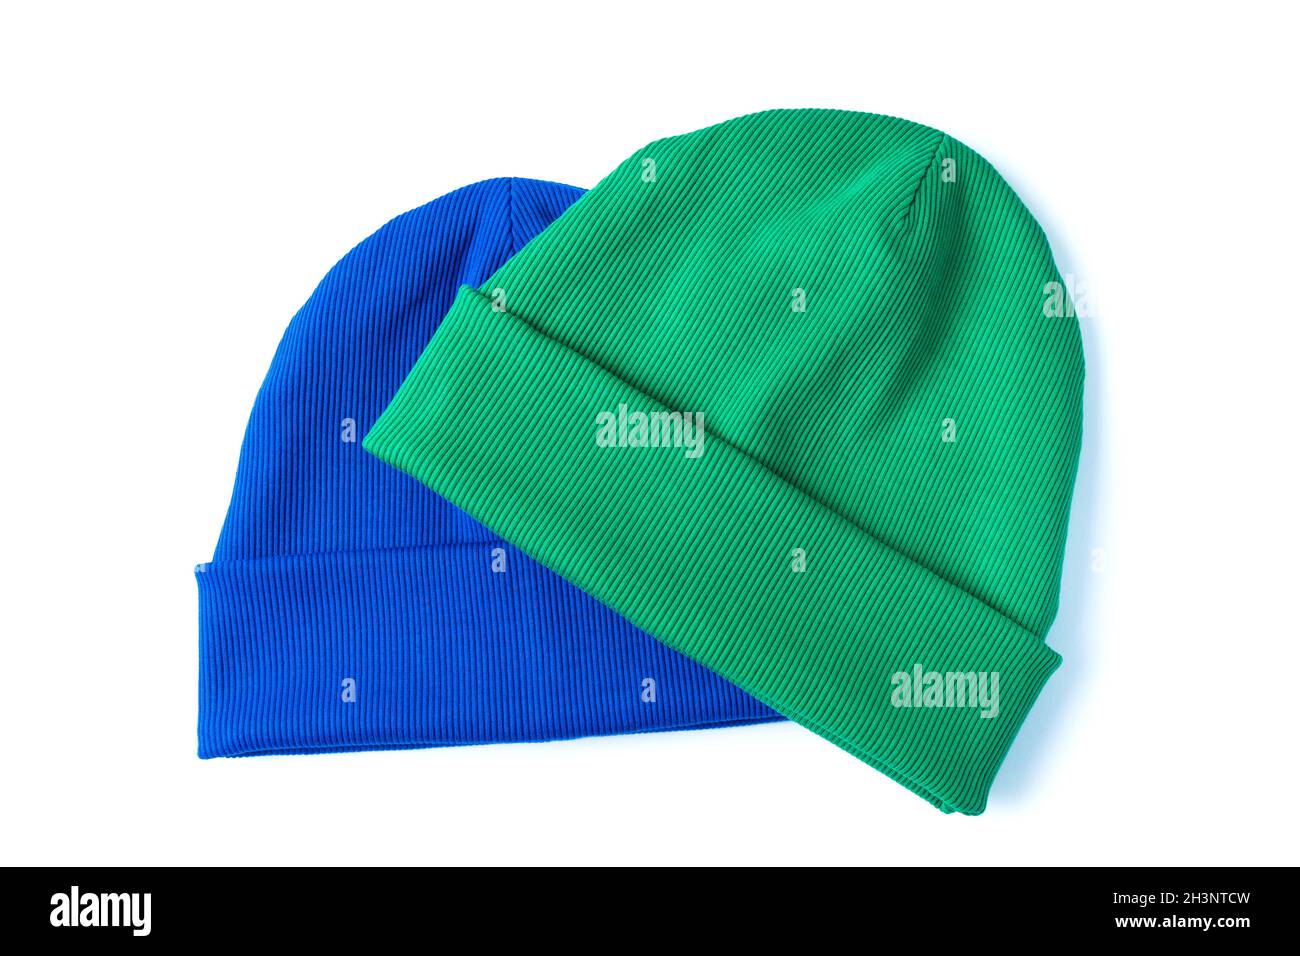 Zwei stylische Jugend Beanie Hüte in den trendigen Farben grün und hellblau für kühles Wetter Stockfoto